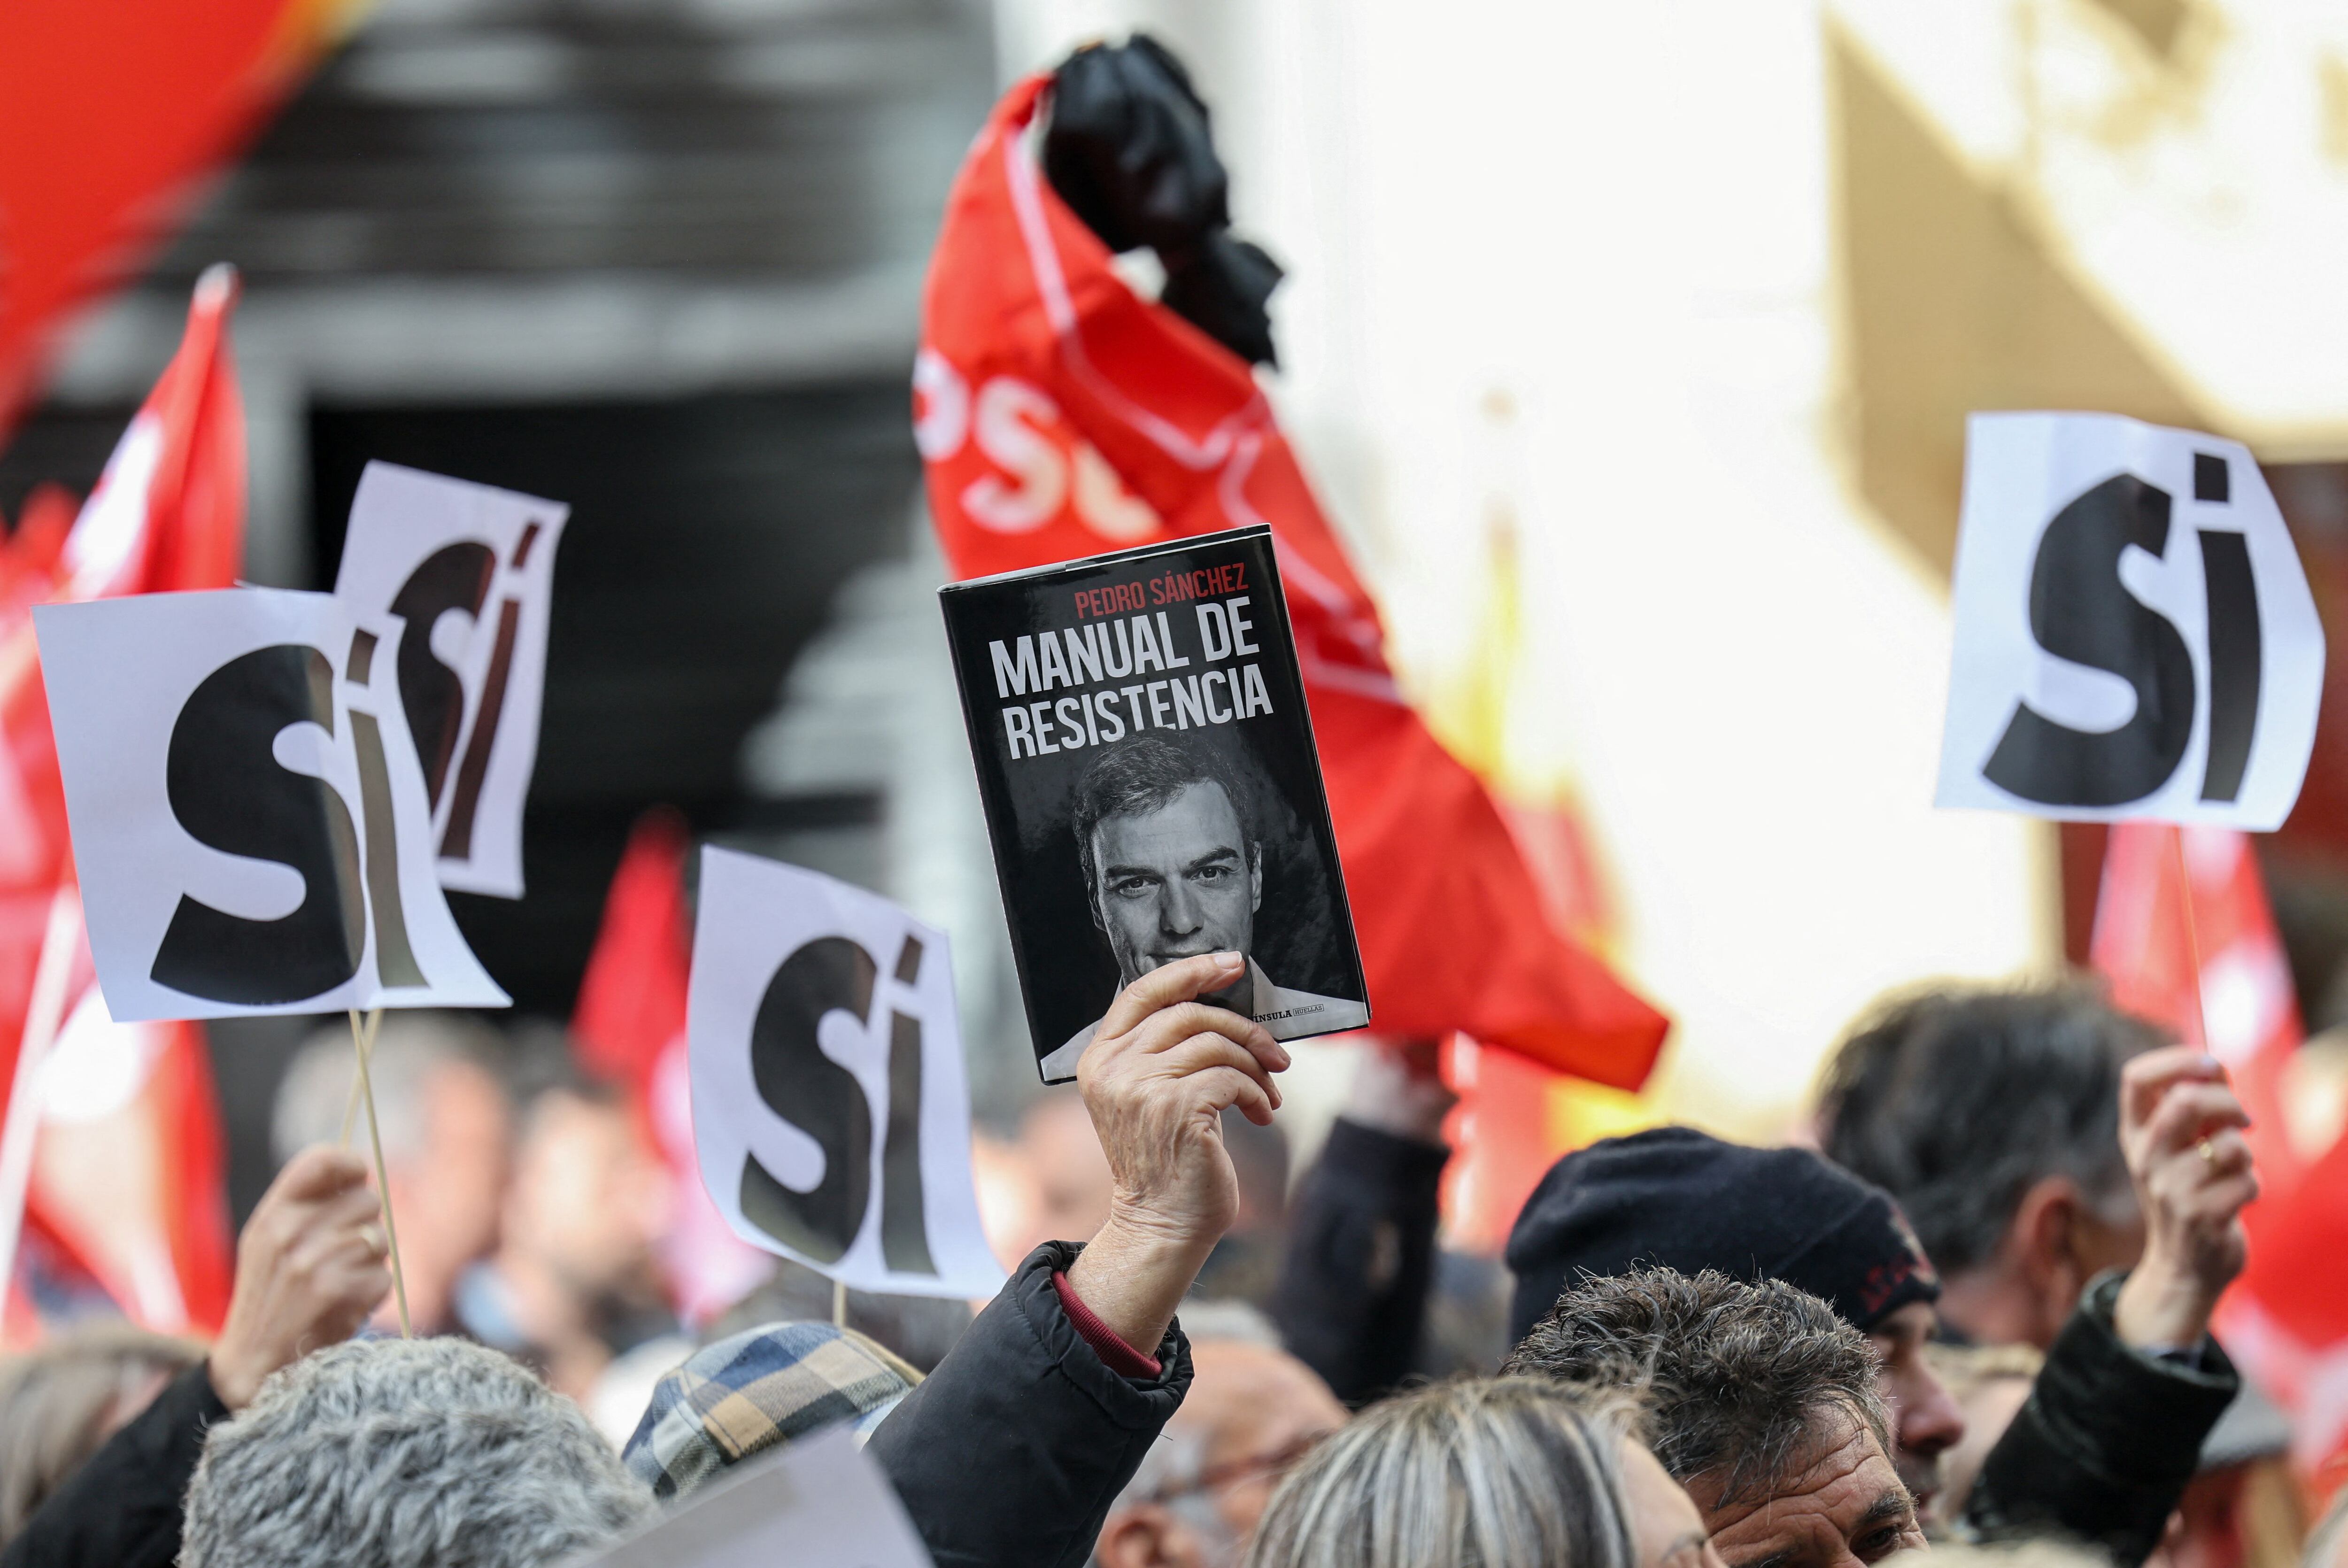 Una persona sostiene una copia del libro "Manual de resistencia" de  Pedro Sánchez, mientras la gente se reúne frente a la sede del PSOE para mostrar su apoyo al jefe de gobierno español, en Madrid, de 27 de abril de 2024. Foto: Reuters